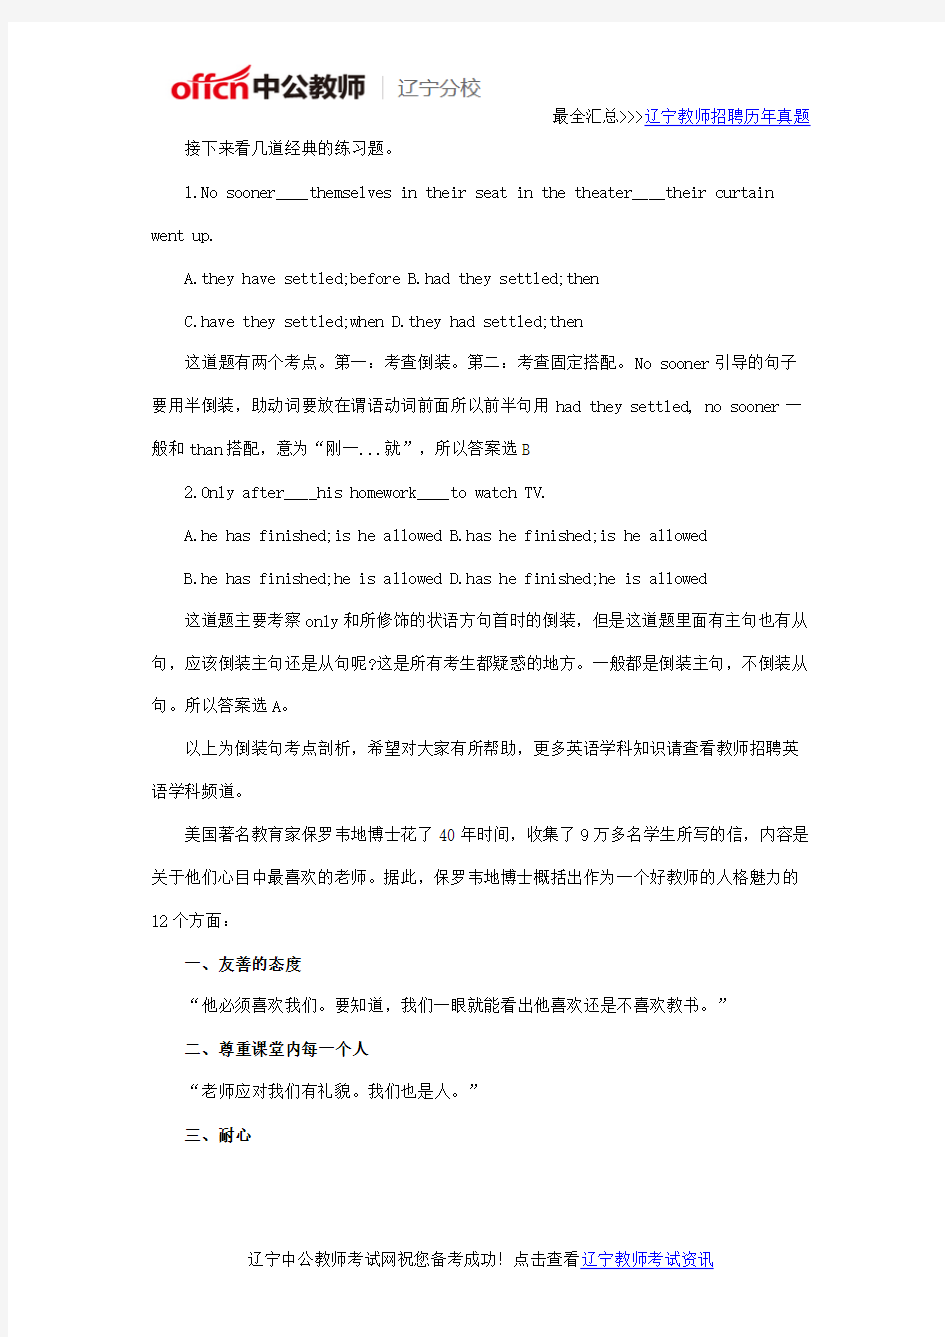 2016年辽宁省教师招聘考试英语学科笔试倒装句考点剖析